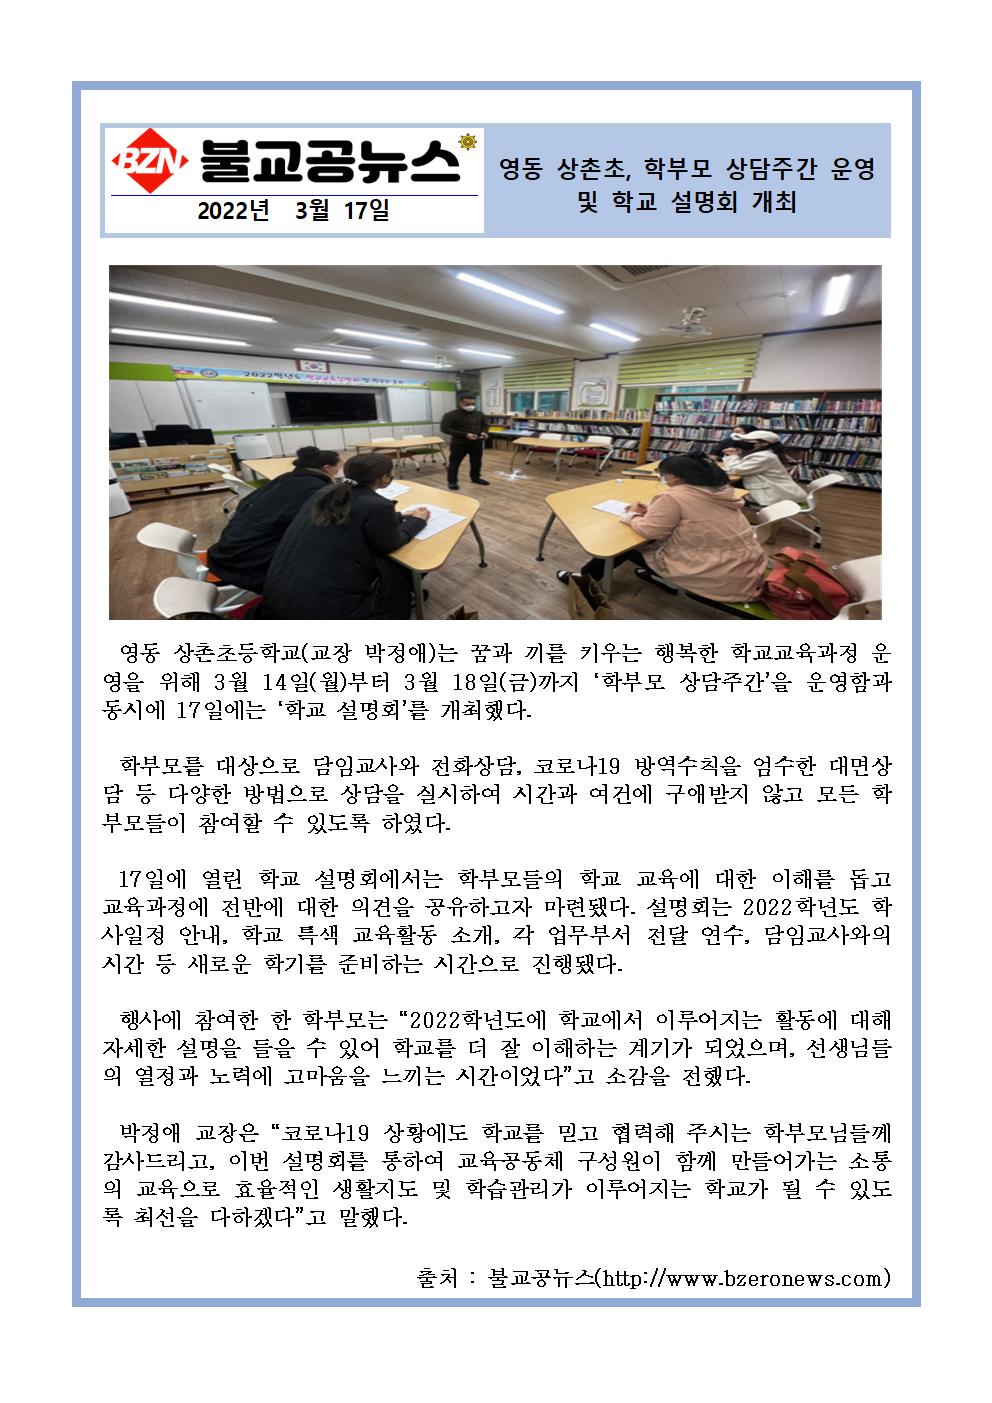 2022. 영동 상촌초, 학부모 상담주간 운영 및 학교 설명회 개최(불고굥뉴스 3.17)001